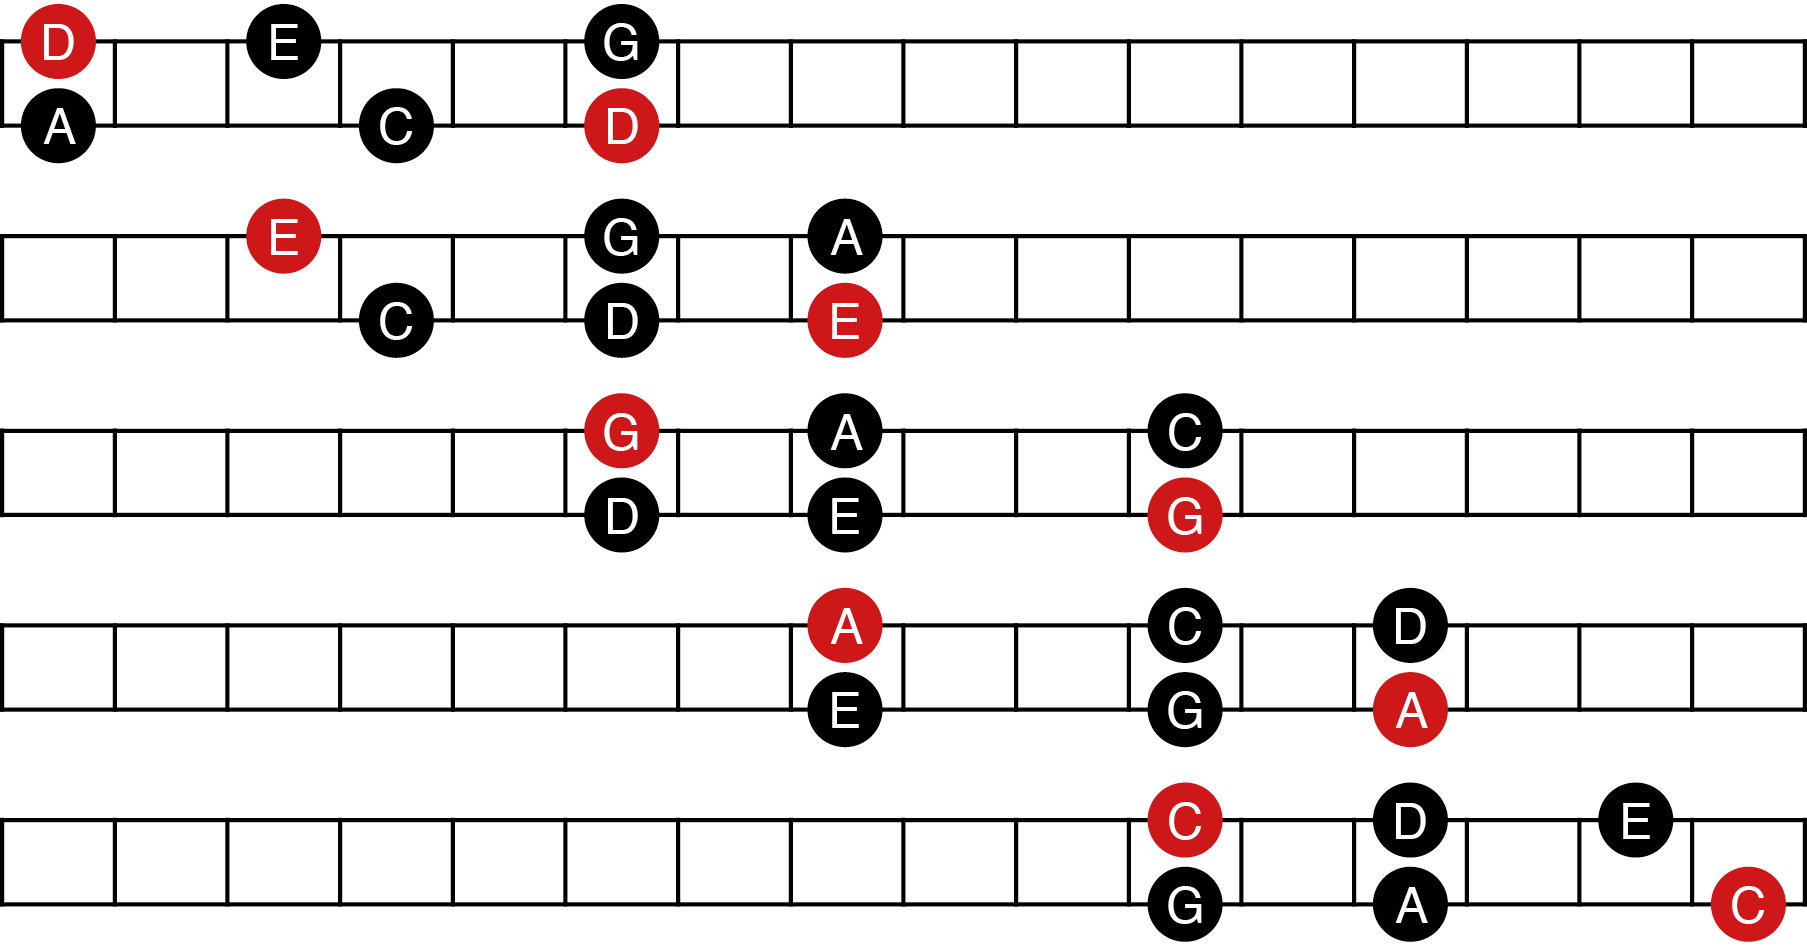 Combinaisons de doigtés à trois notes par corde (gamme pentatonique)